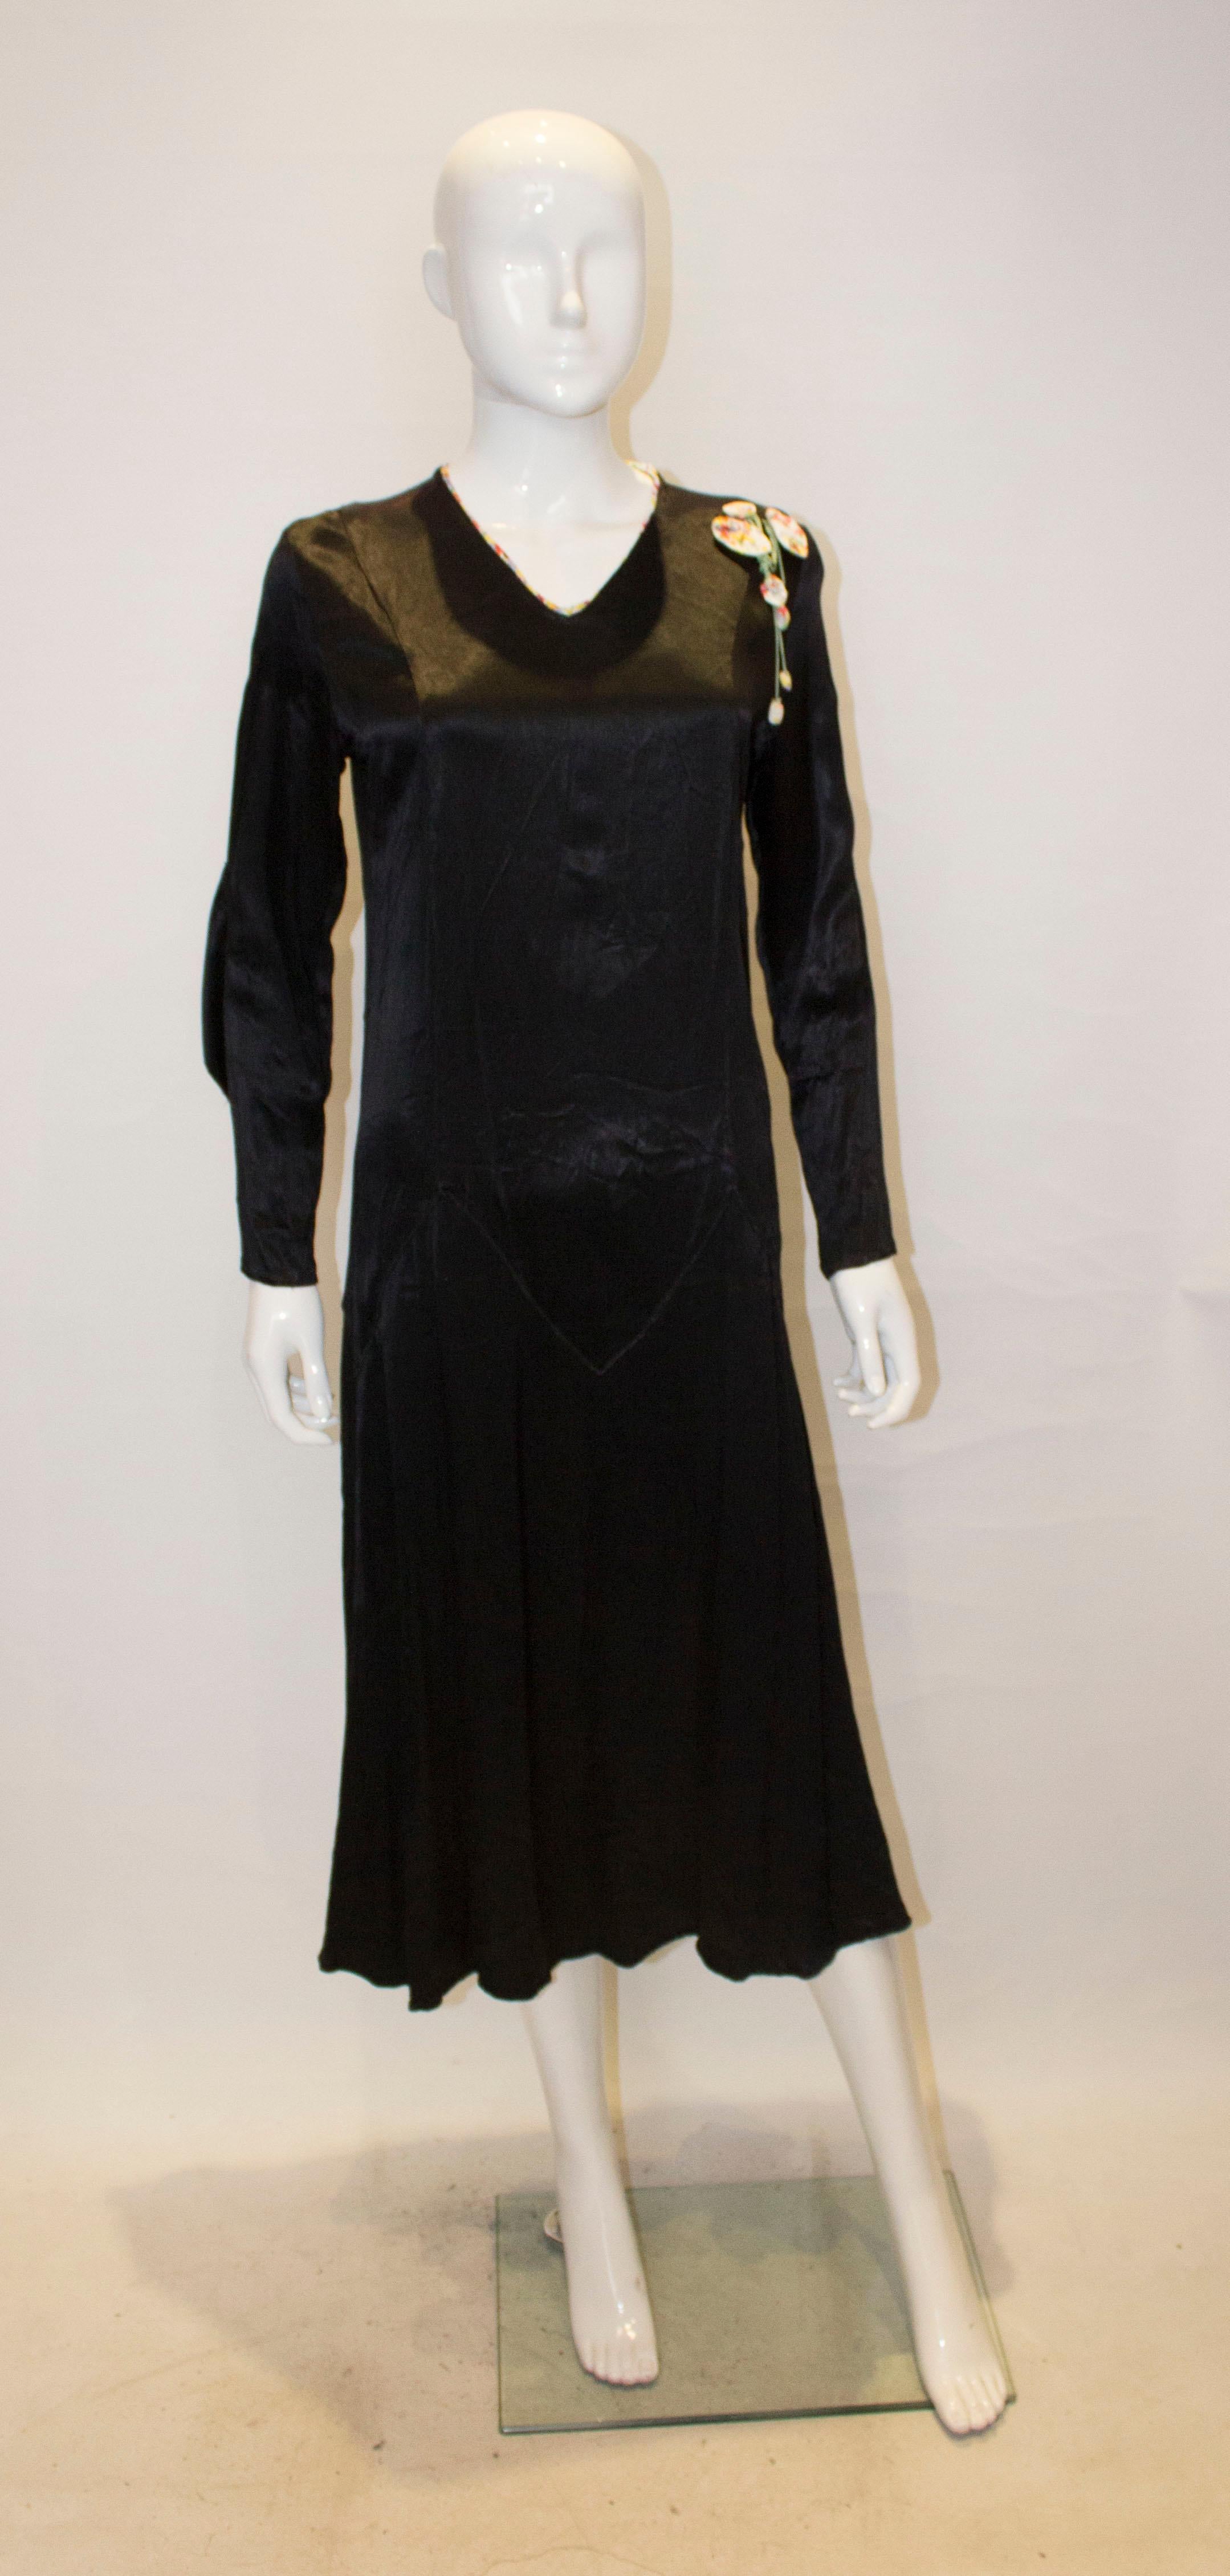 Ein charmantes Vintage-Kleid aus den 1920er Jahren. Das Kleid ist aus schwarzem Satin, hat einen V-Ausschnitt mit Blumenbesatz, Ärmel mit Blumenrüschen und Blumenverzierung an einer Schulter. 